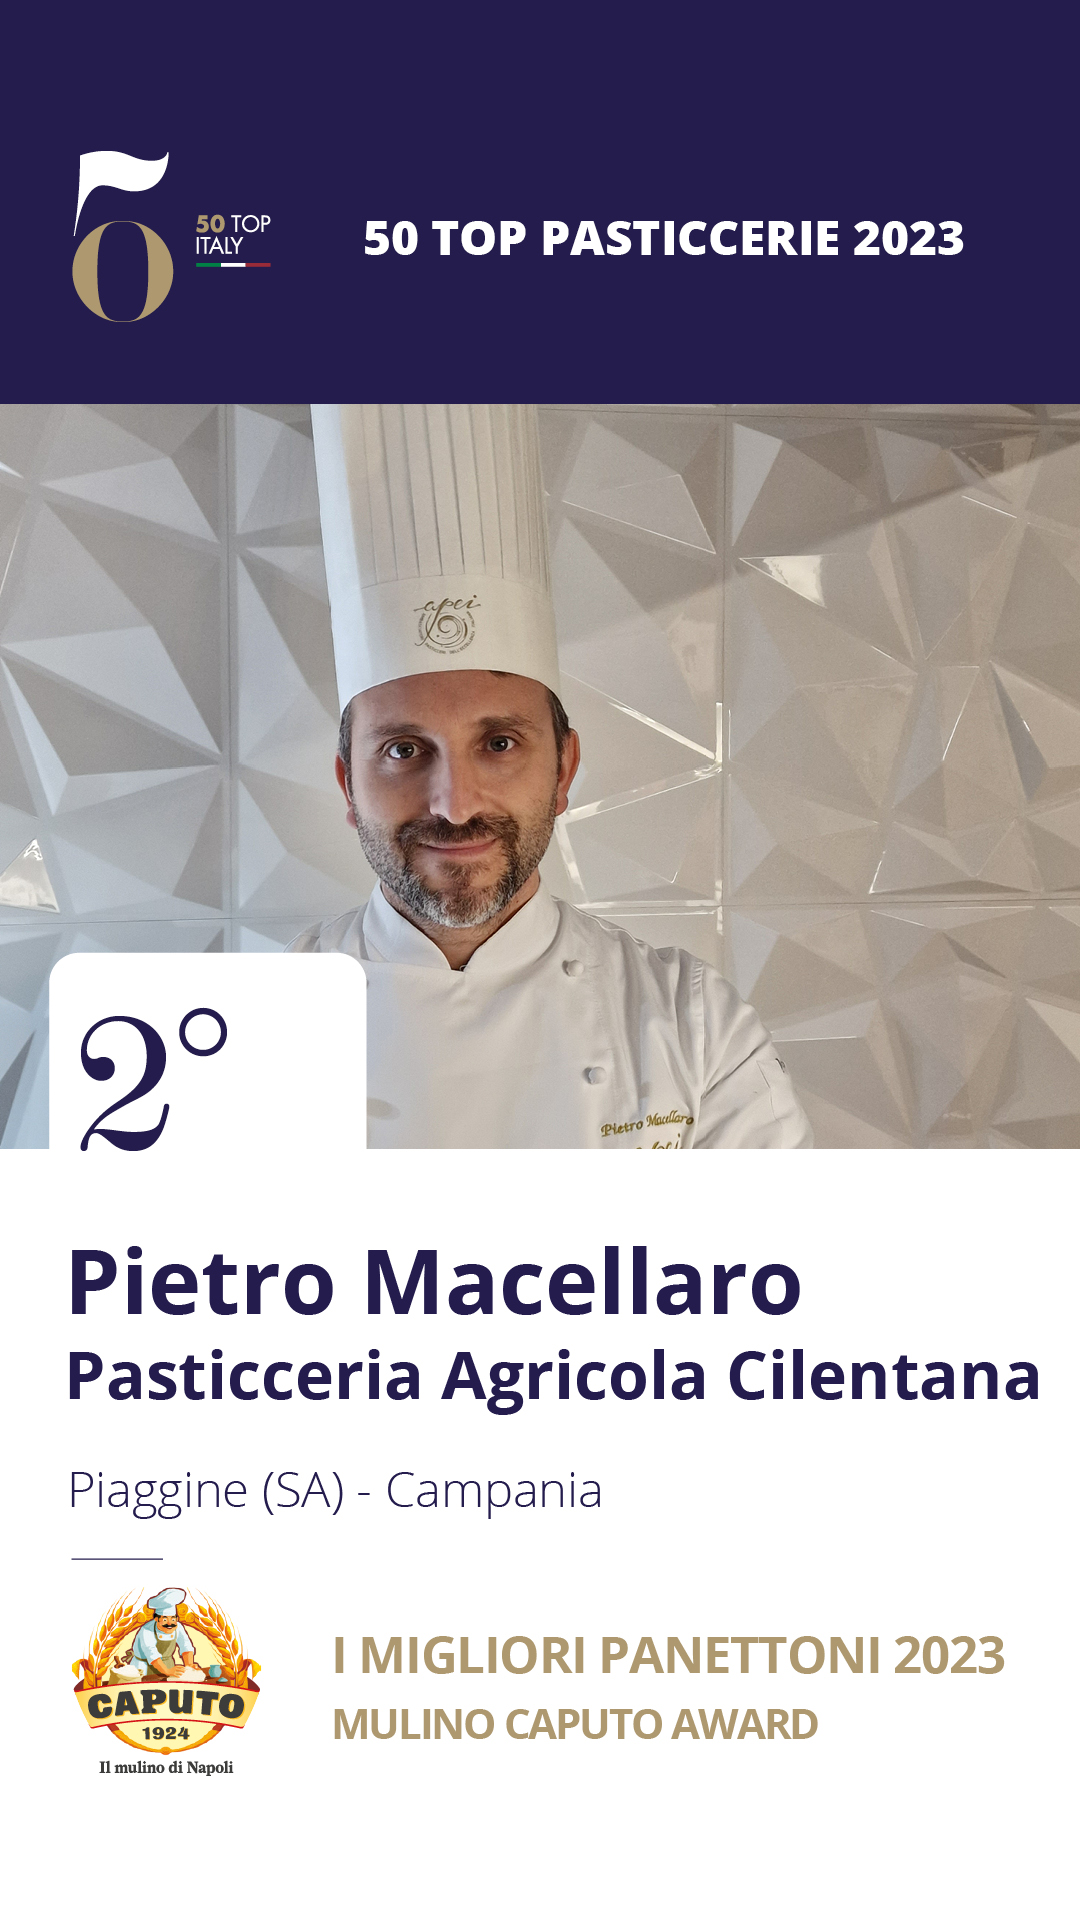 2 - Pietro Macellaro Pasticceria Agricola Cilentana - Piaggine (SA), Campania